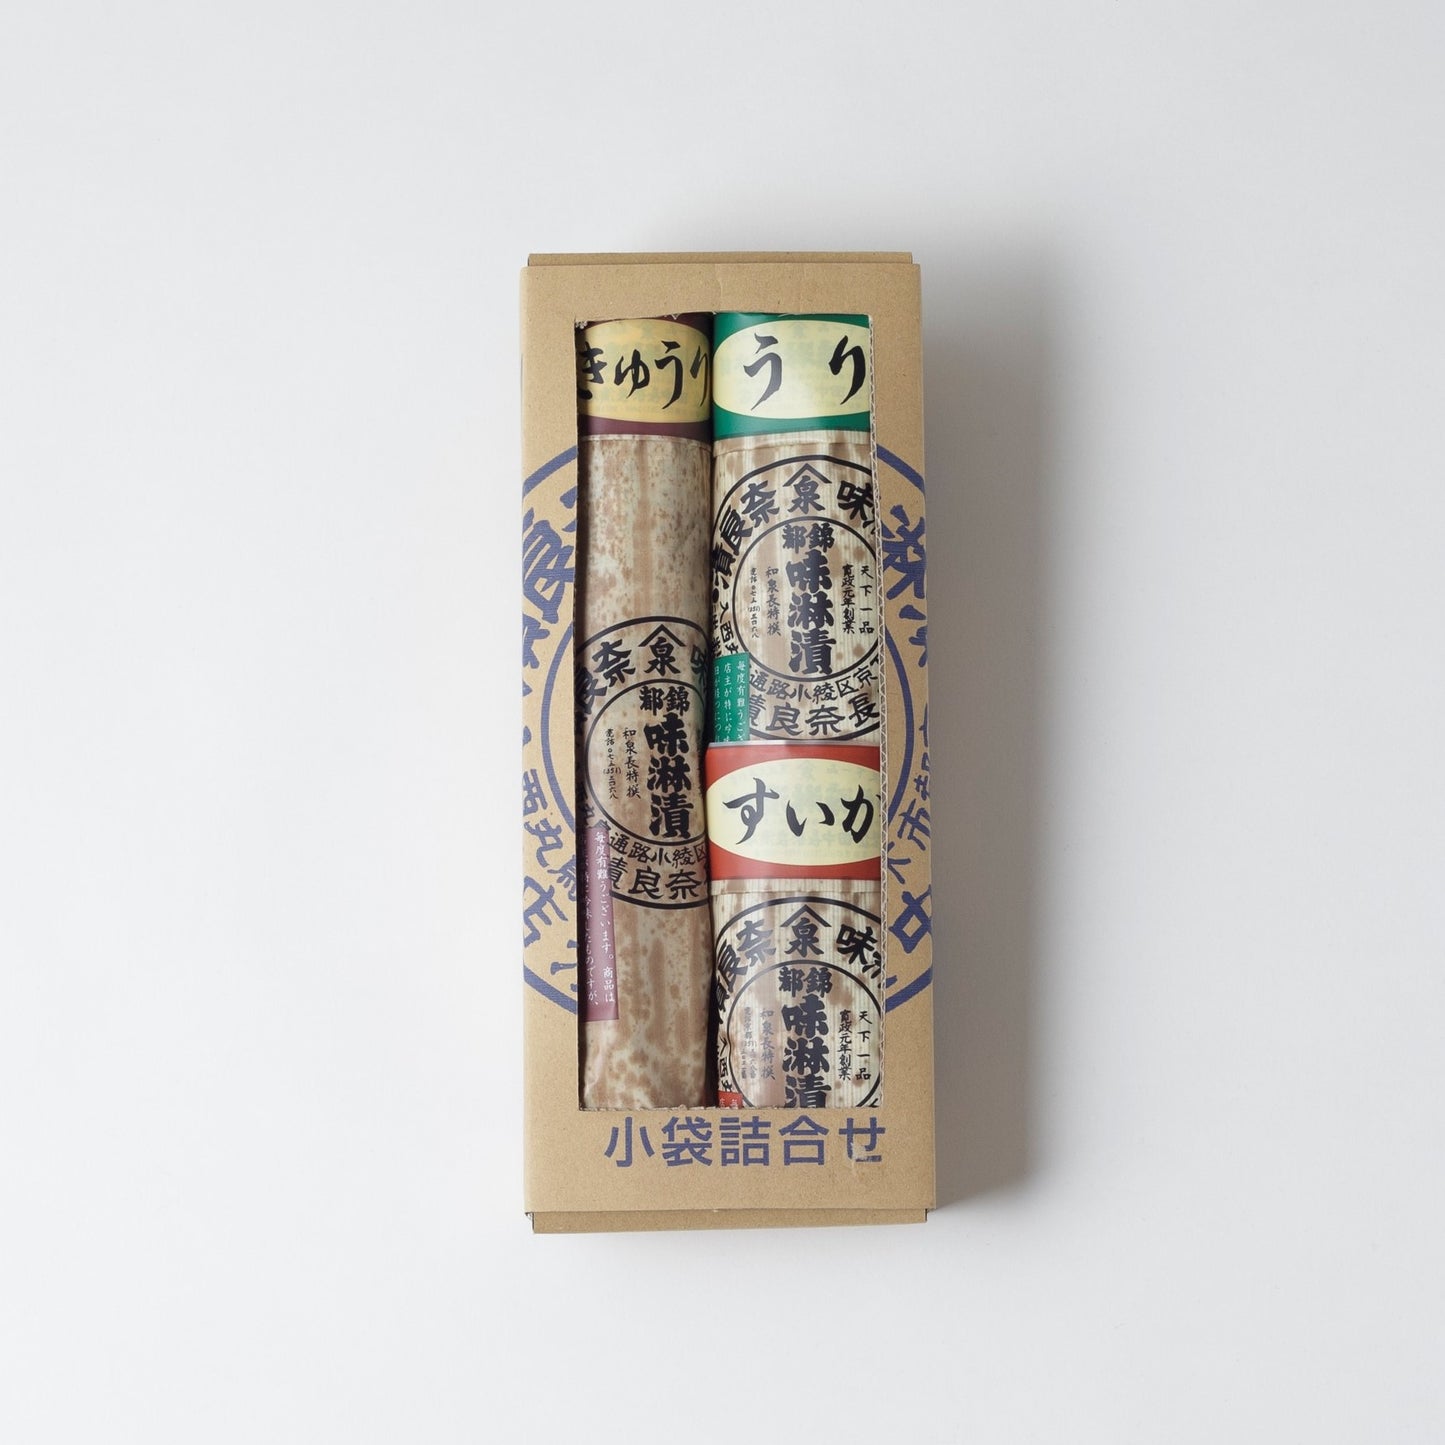 Miyako Nishiki Mirinzuke small bag set (in paper box), small